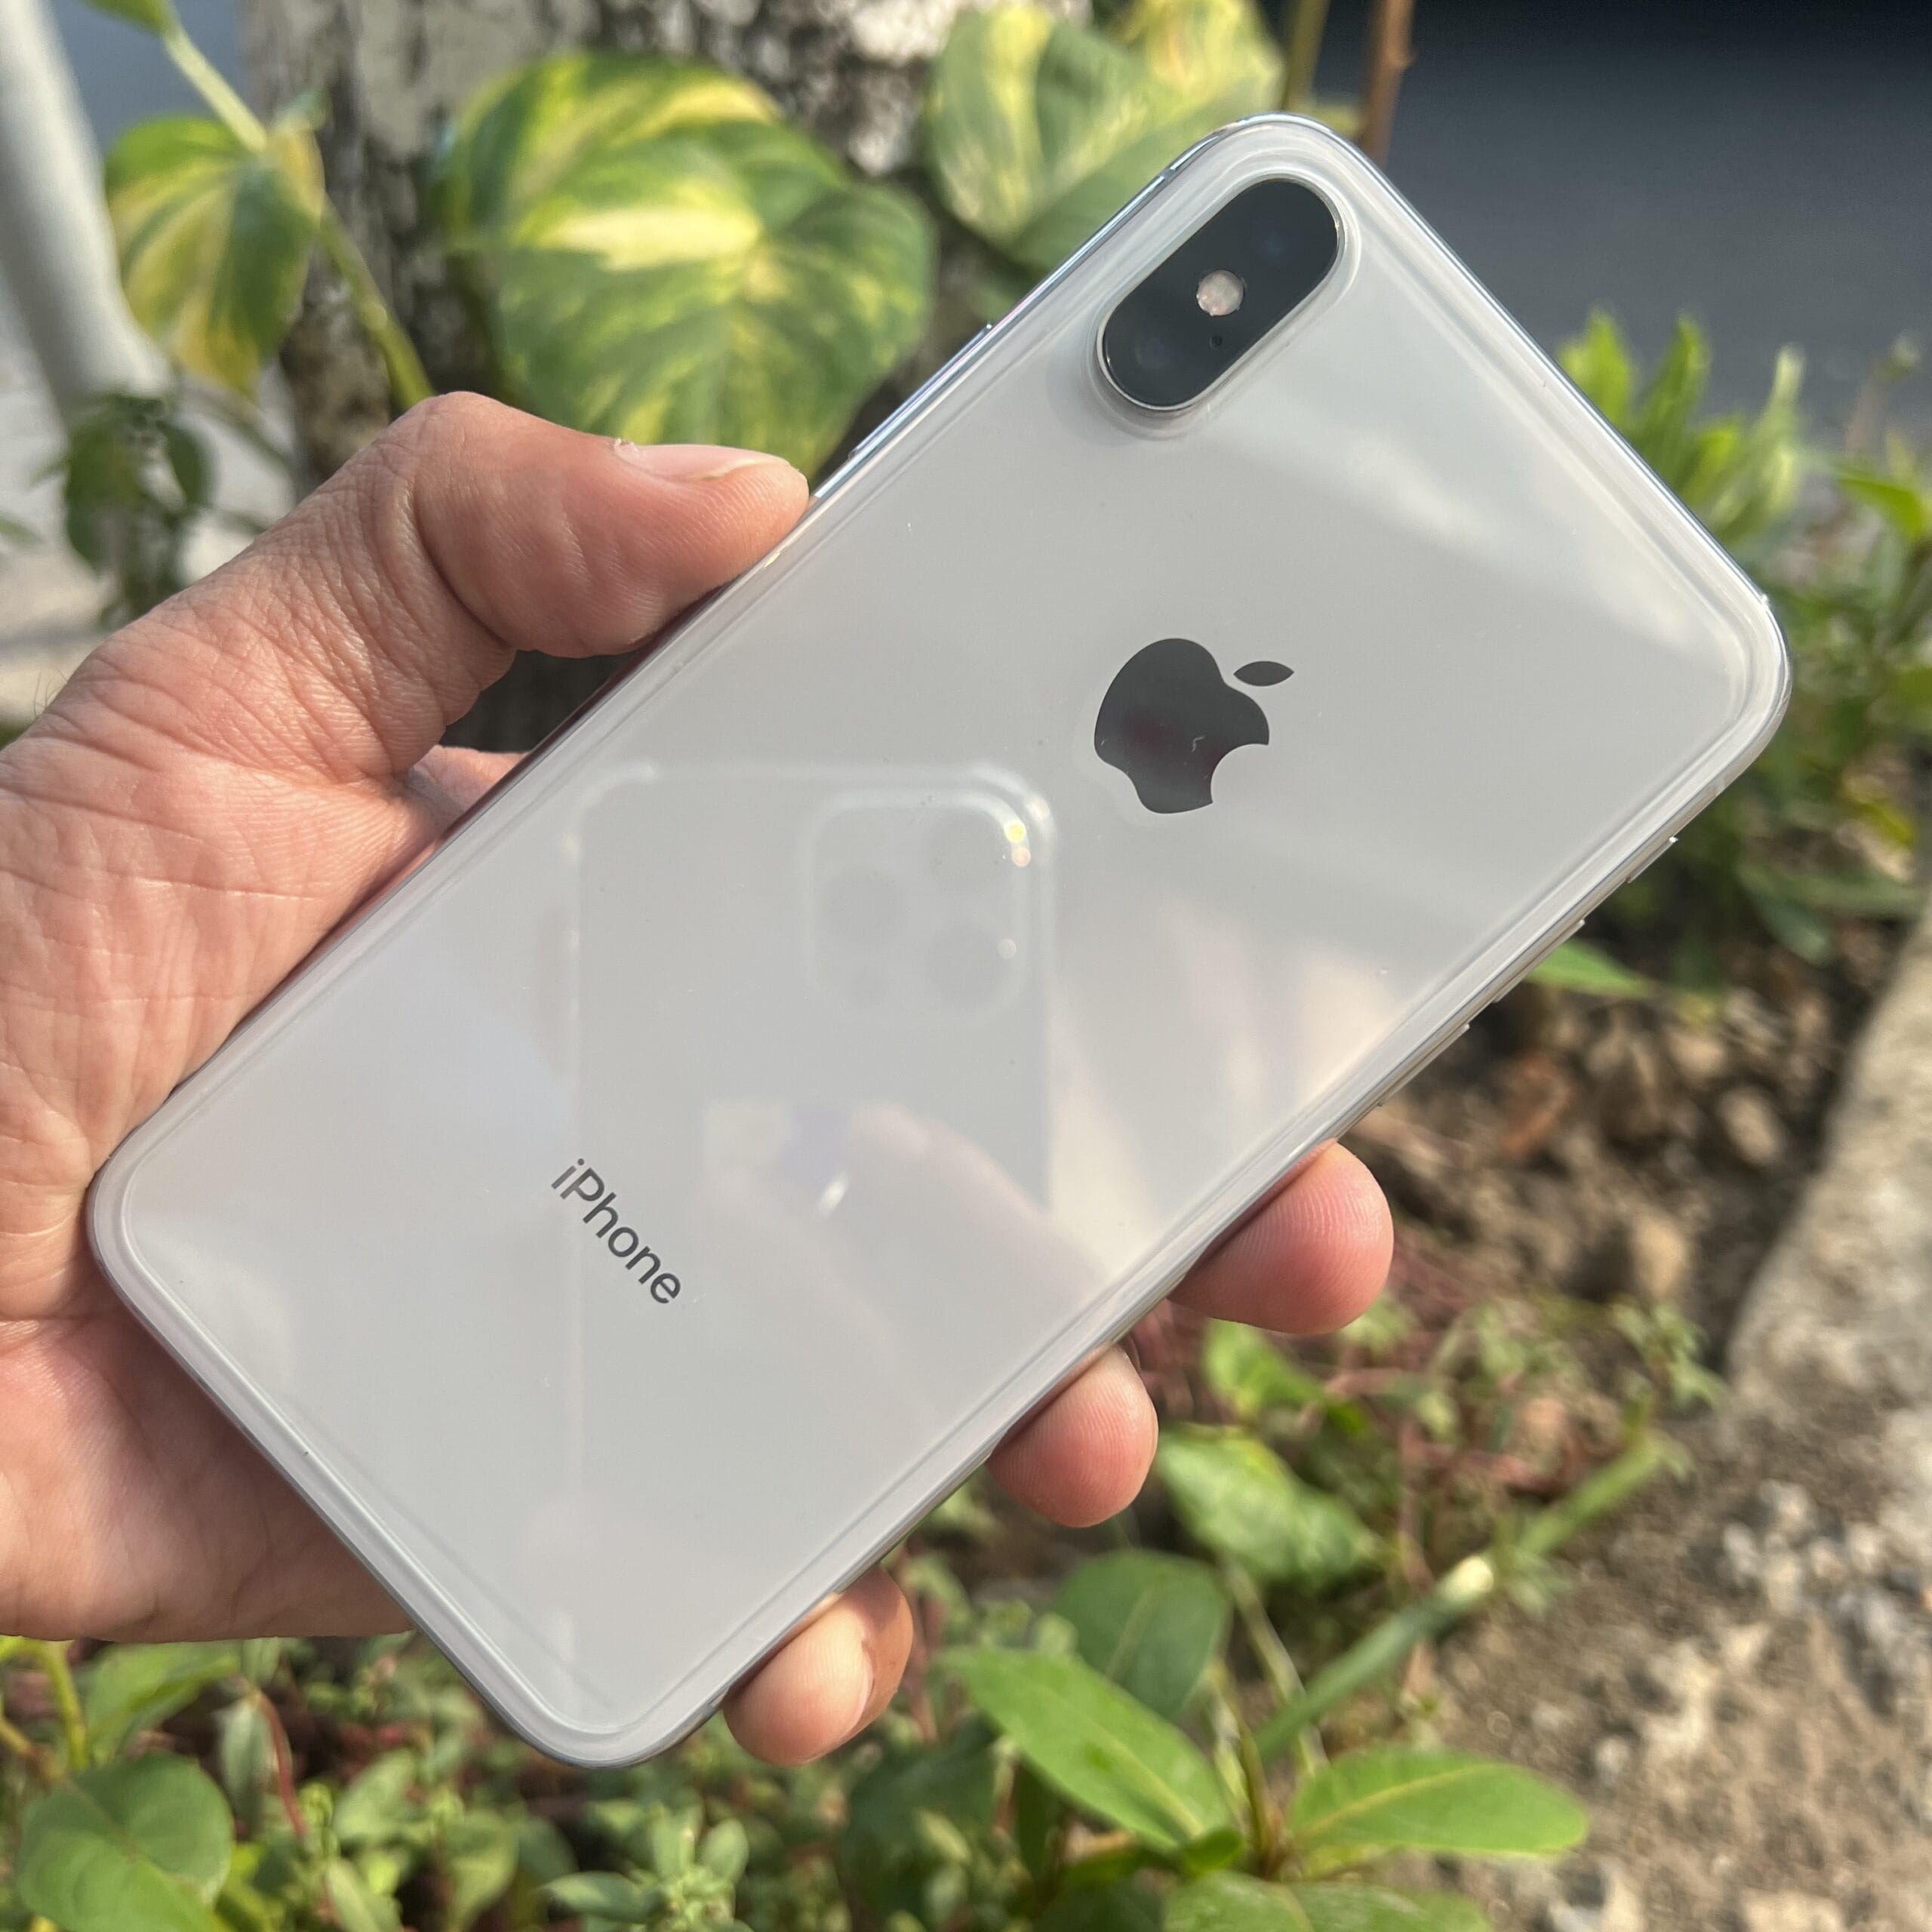 iPhoneX silver 64GB - スマートフォン/携帯電話